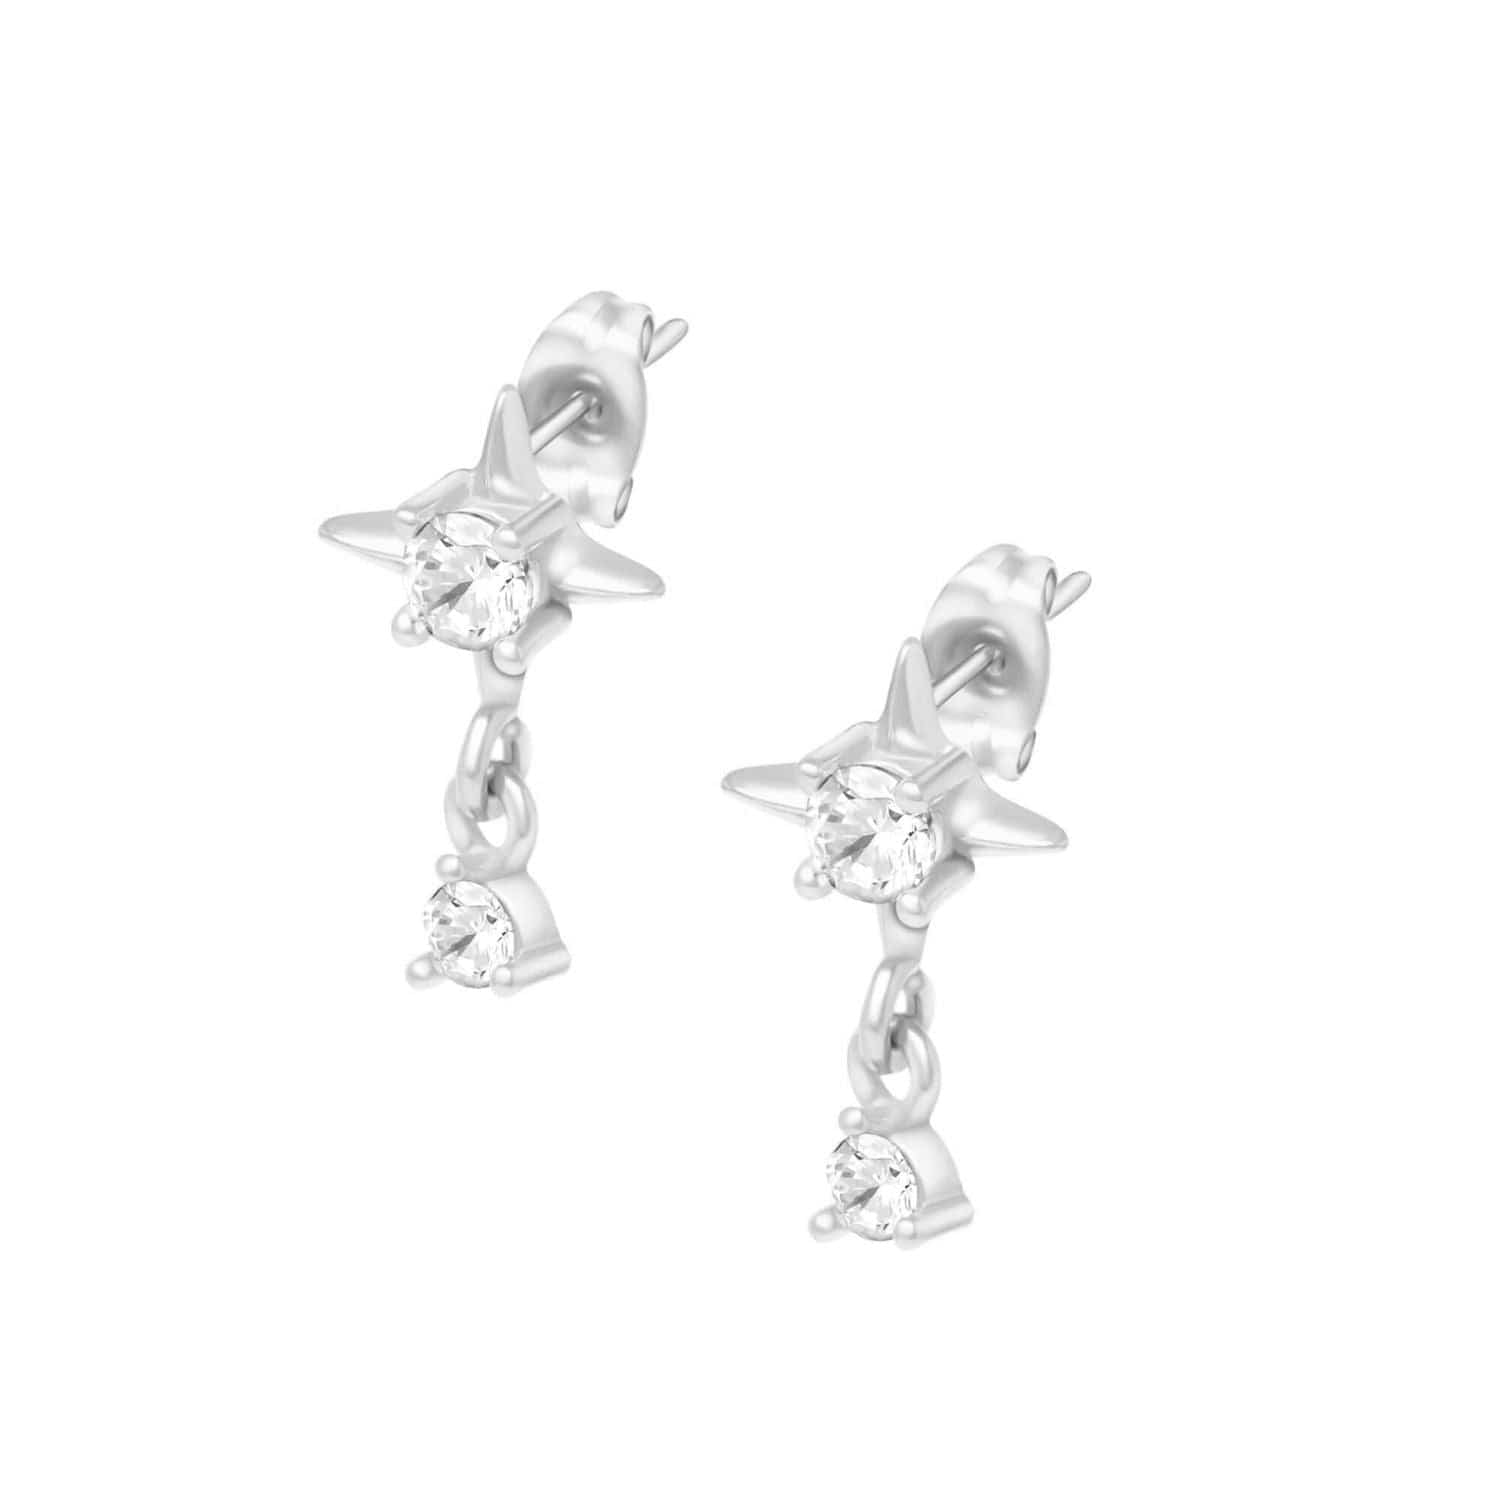 BohoMoon Stainless Steel Shooting Star Stud Earrings Silver